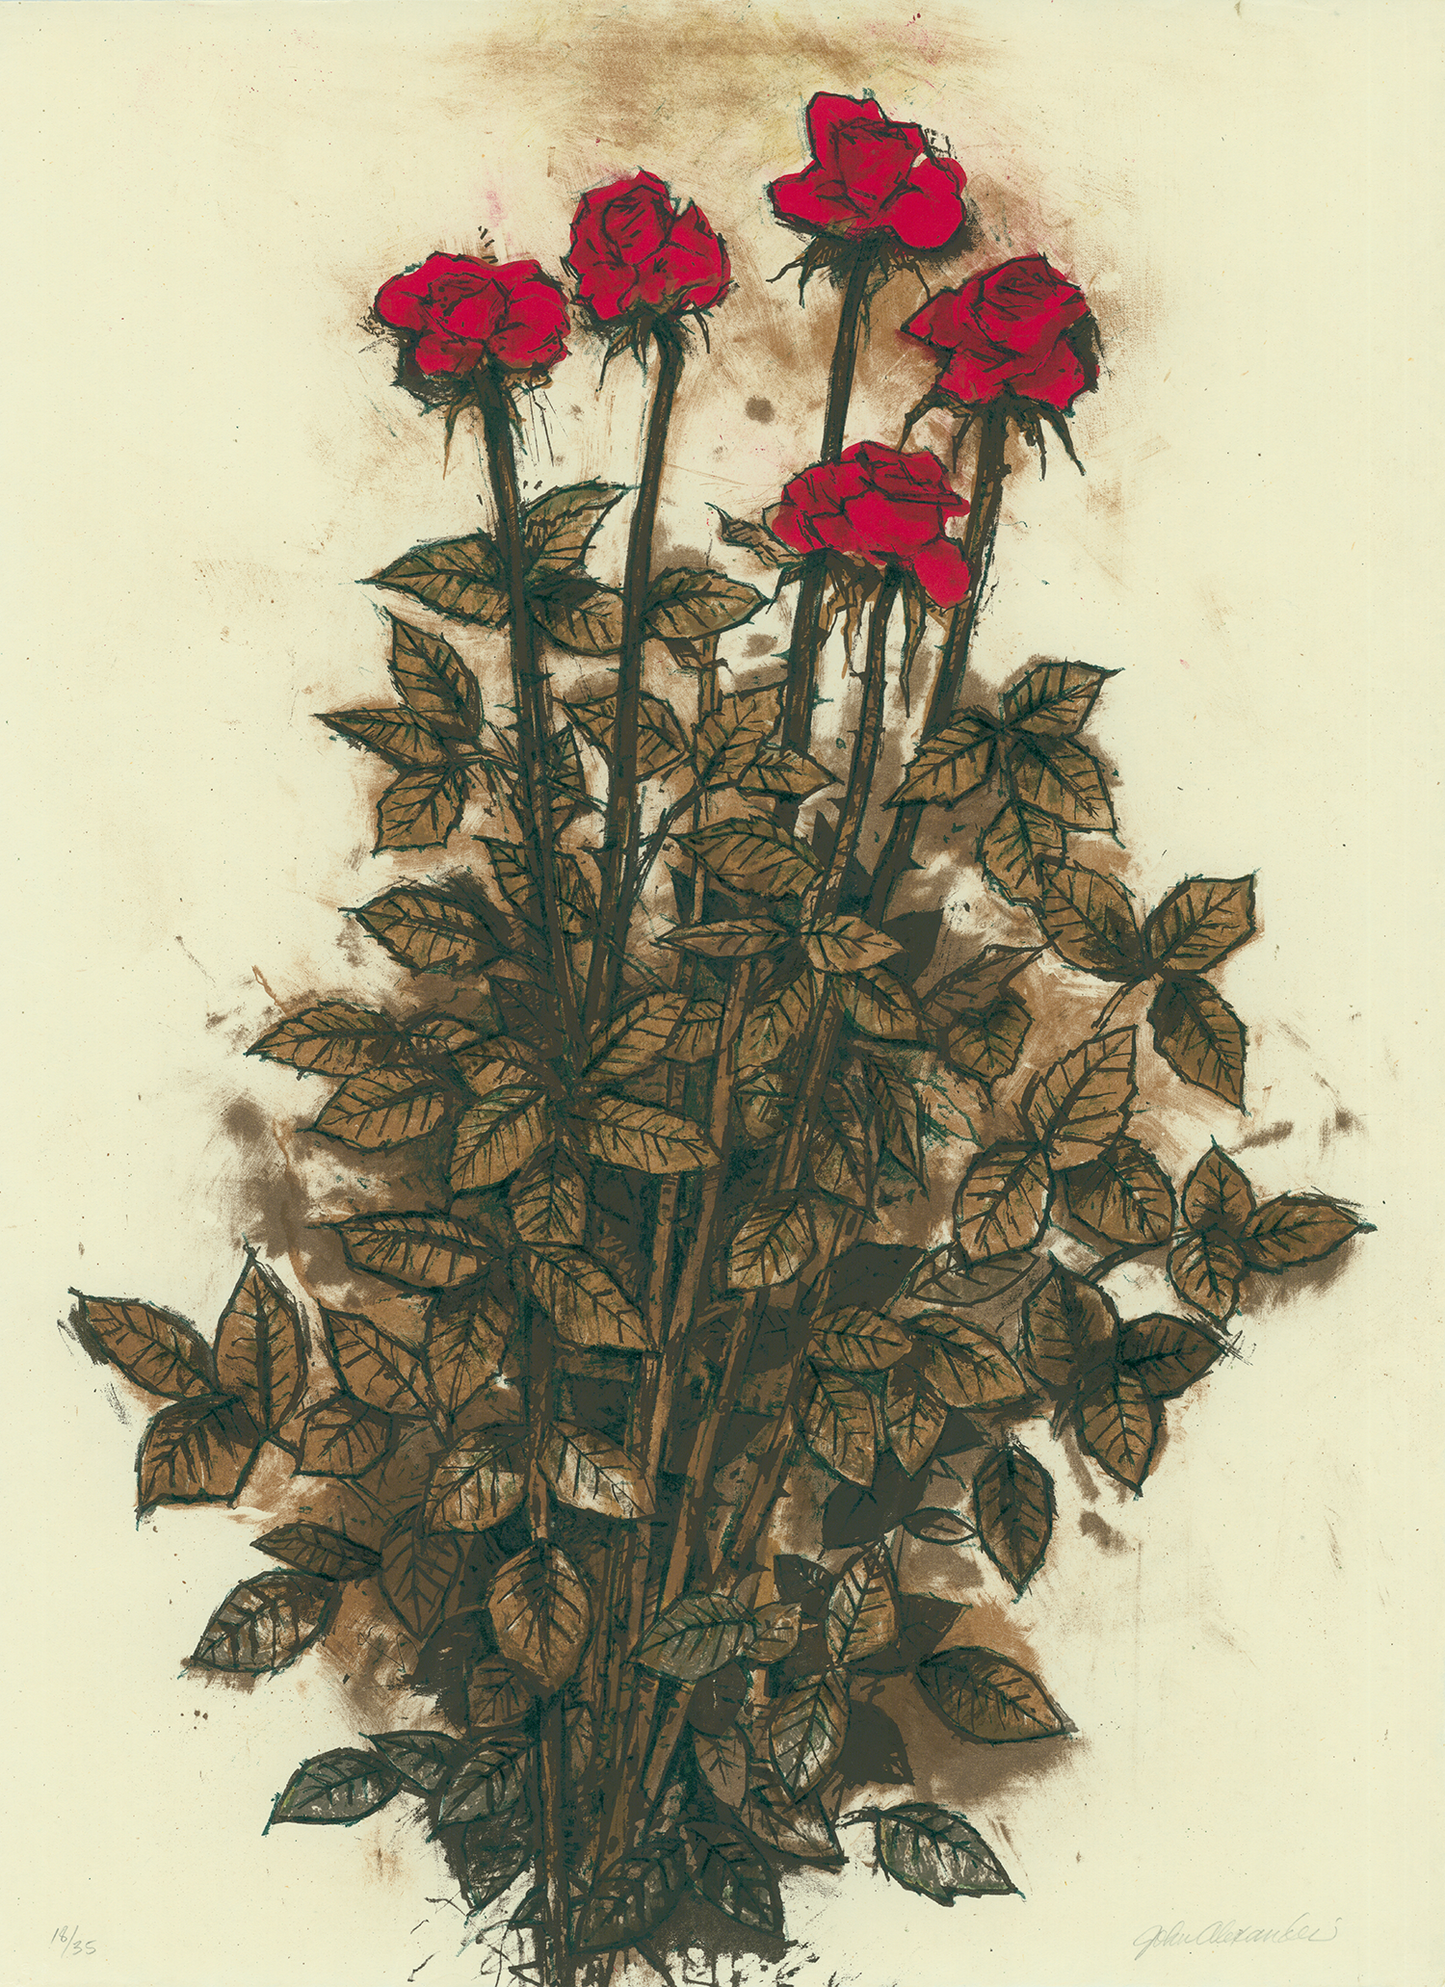 Alexander, John "Red Roses"